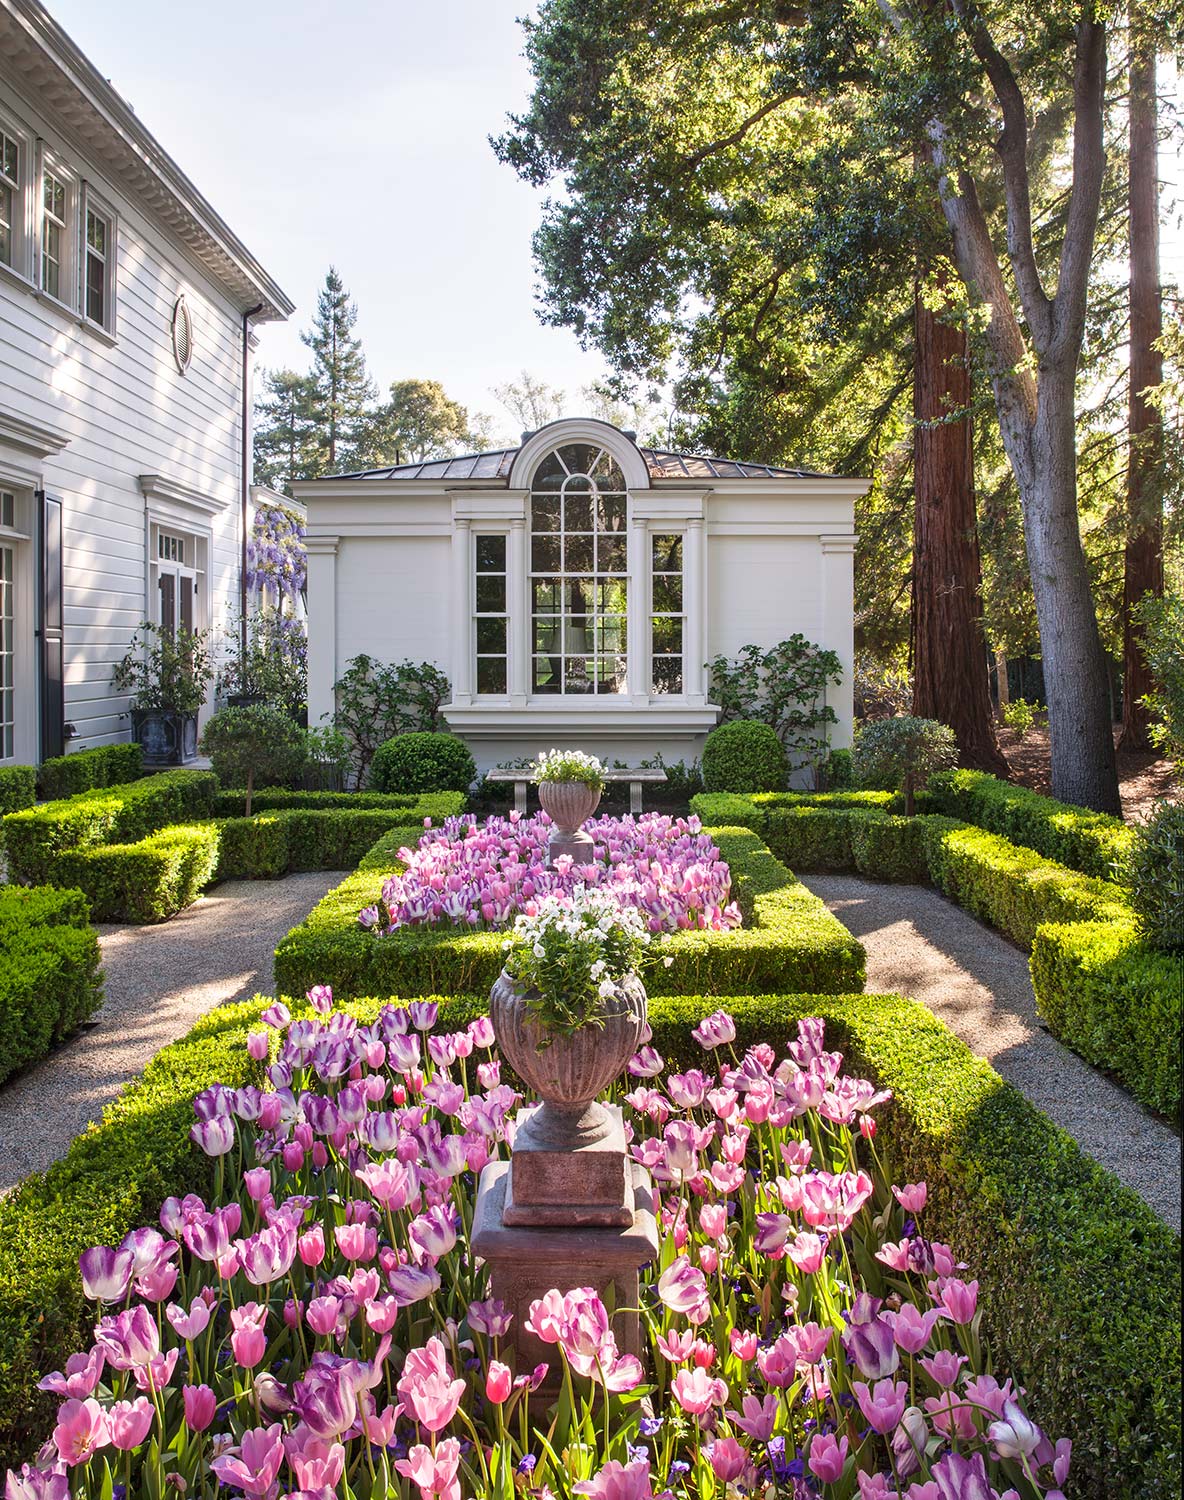   Elizabeth Everdell Garden Design  